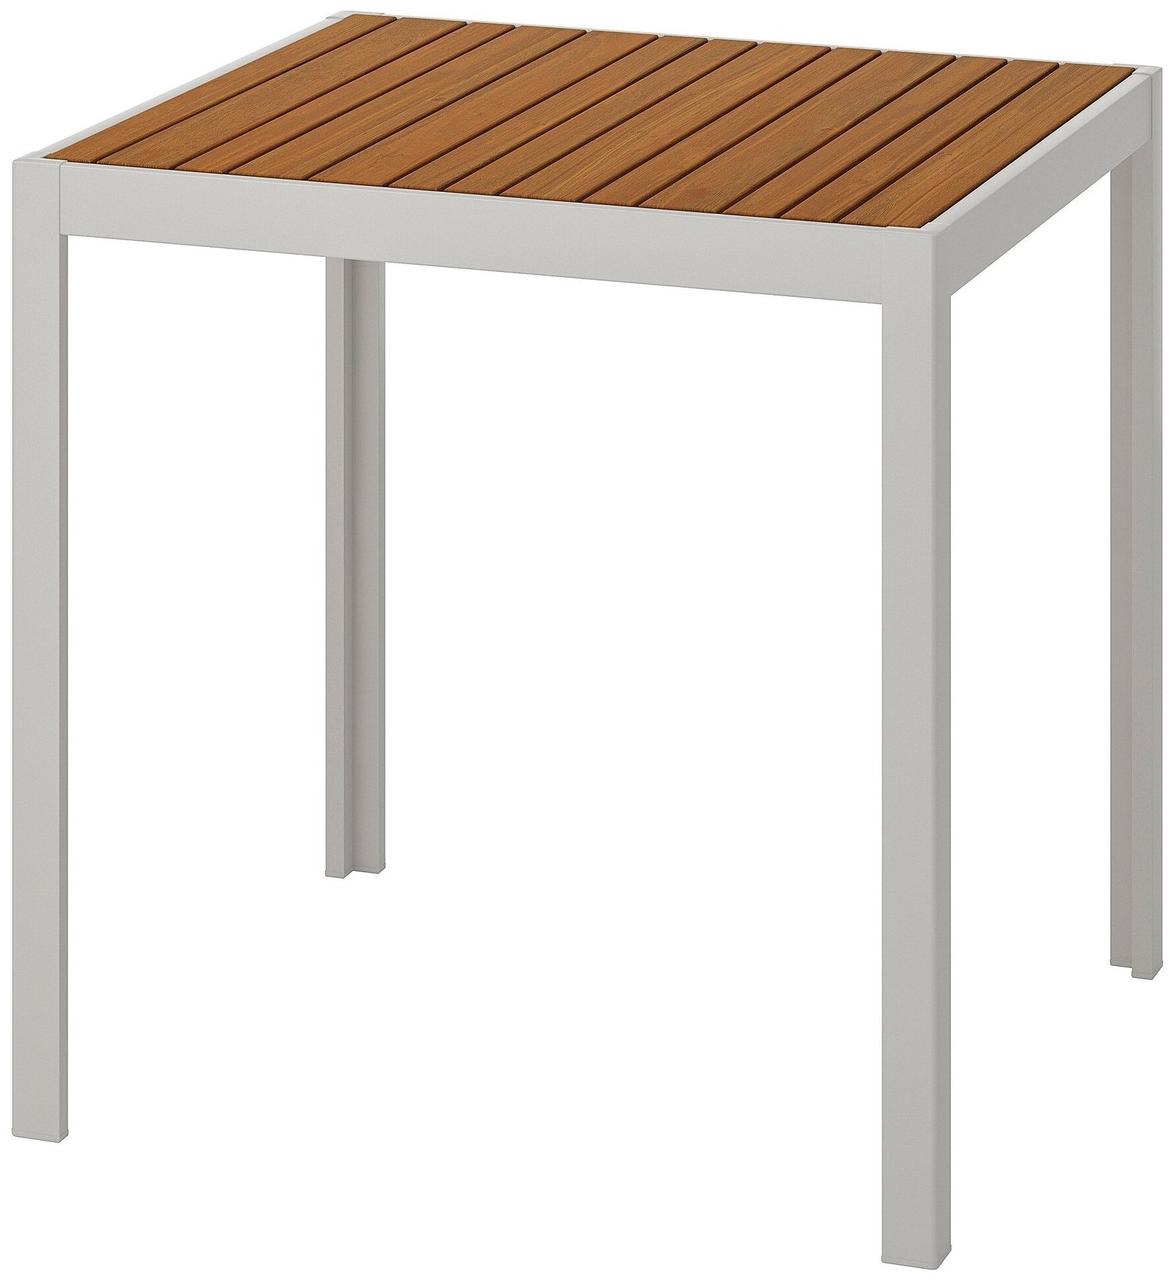 Стол ШЭЛЛАНД коричневый/серый 71x71x73 см ИКЕА, IKEA